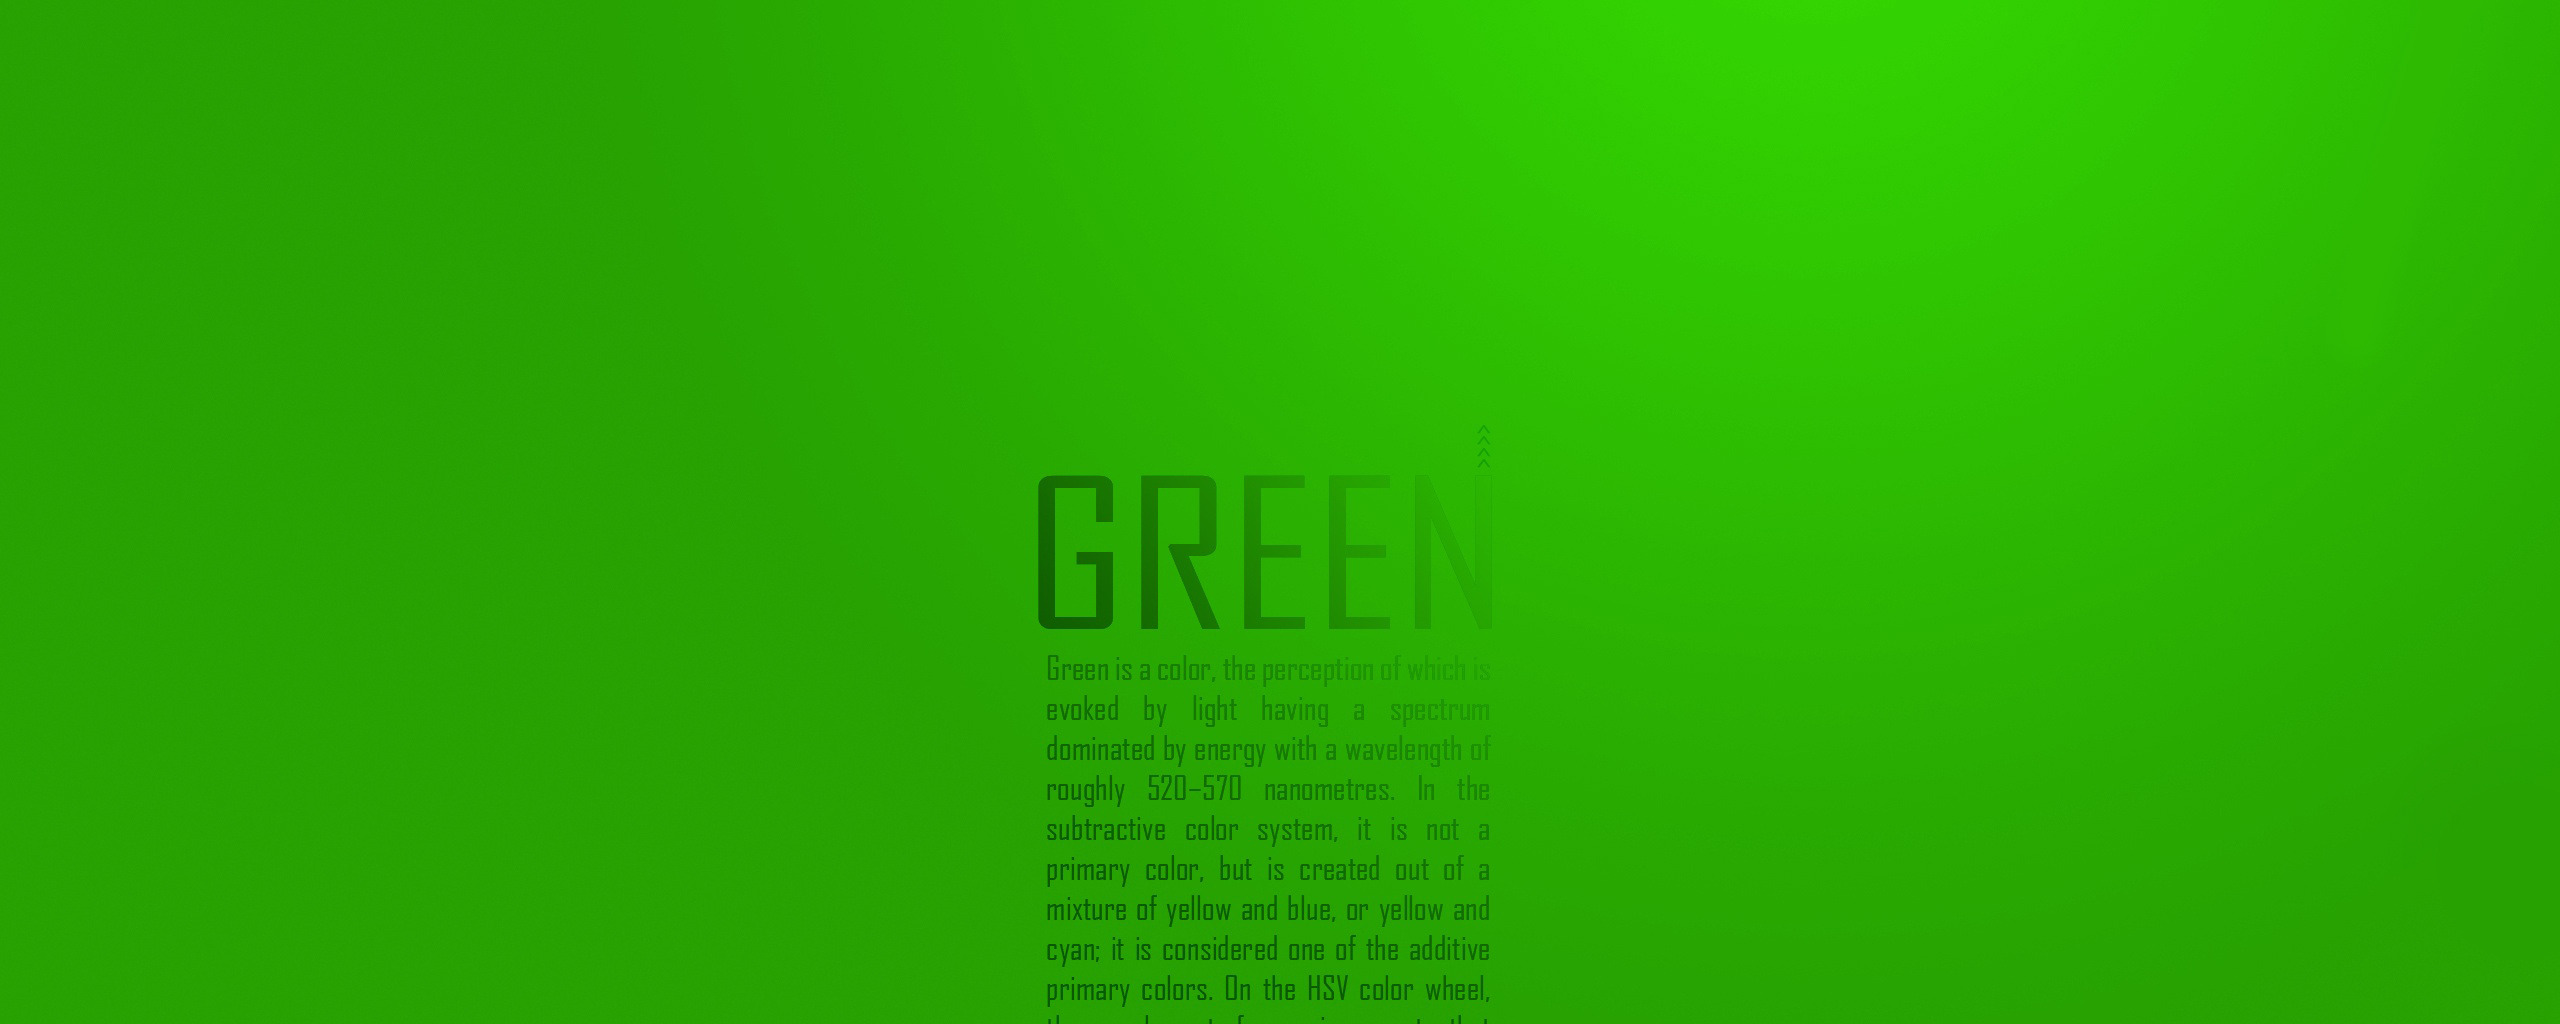 Текст в зеленой чаще. Цвет текста на зеленом фоне. Надпись на салатовом фоне. Зеленый фон для текста. Цвет текста на салатовом фоне.